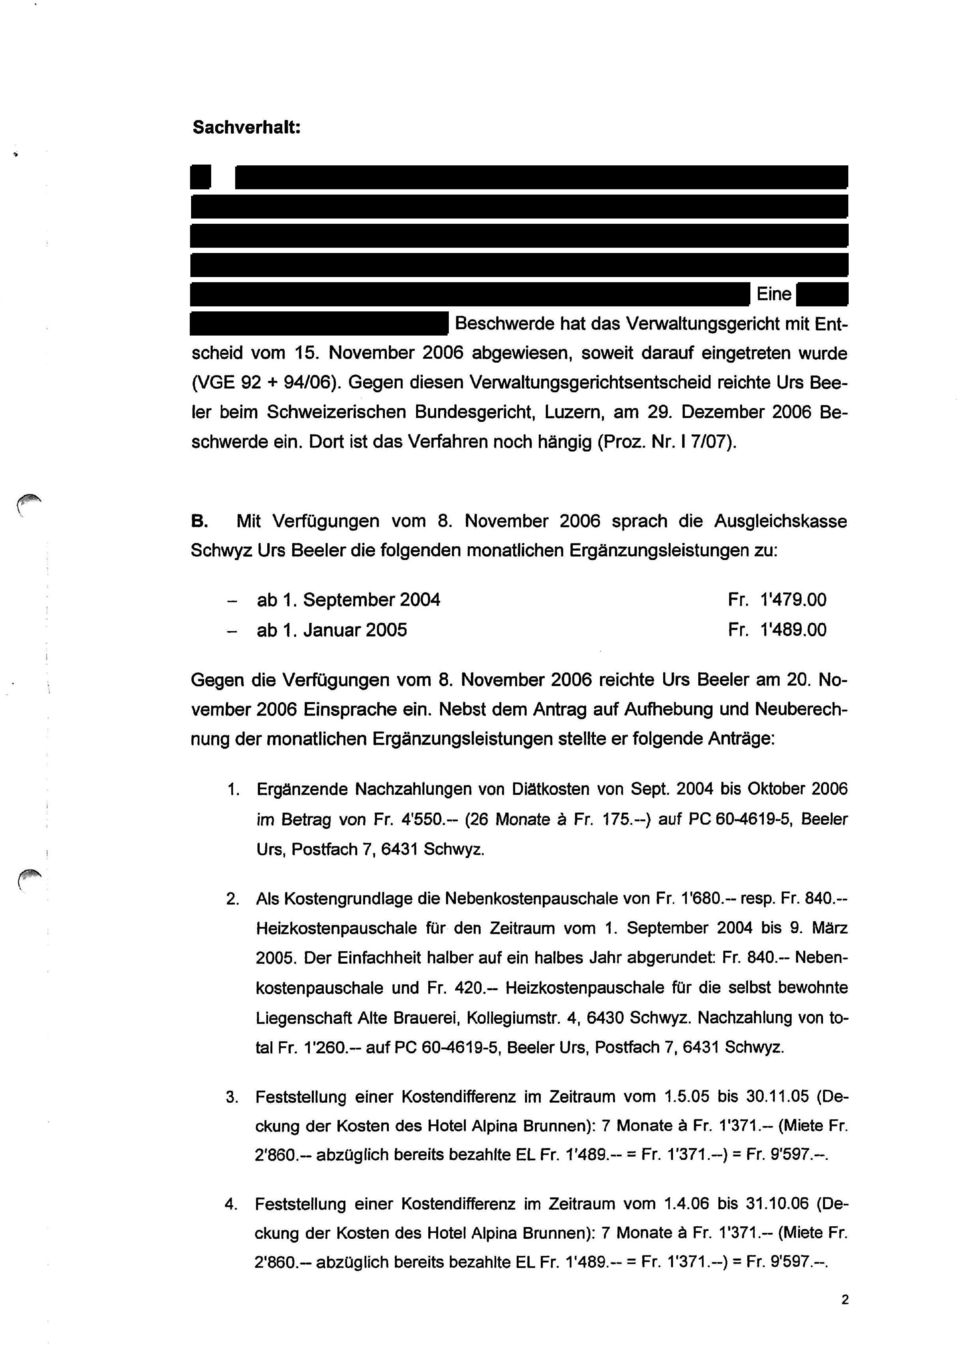 November 2006 sprach die Ausgleichskasse Schwyz Urs Beeler die folgenden monatlichen Ergänzungsleistungen zu: - ab 1. September 2004 Fr. 1'479.00 - ab I.Januar 2005 Fr. 1 "489.